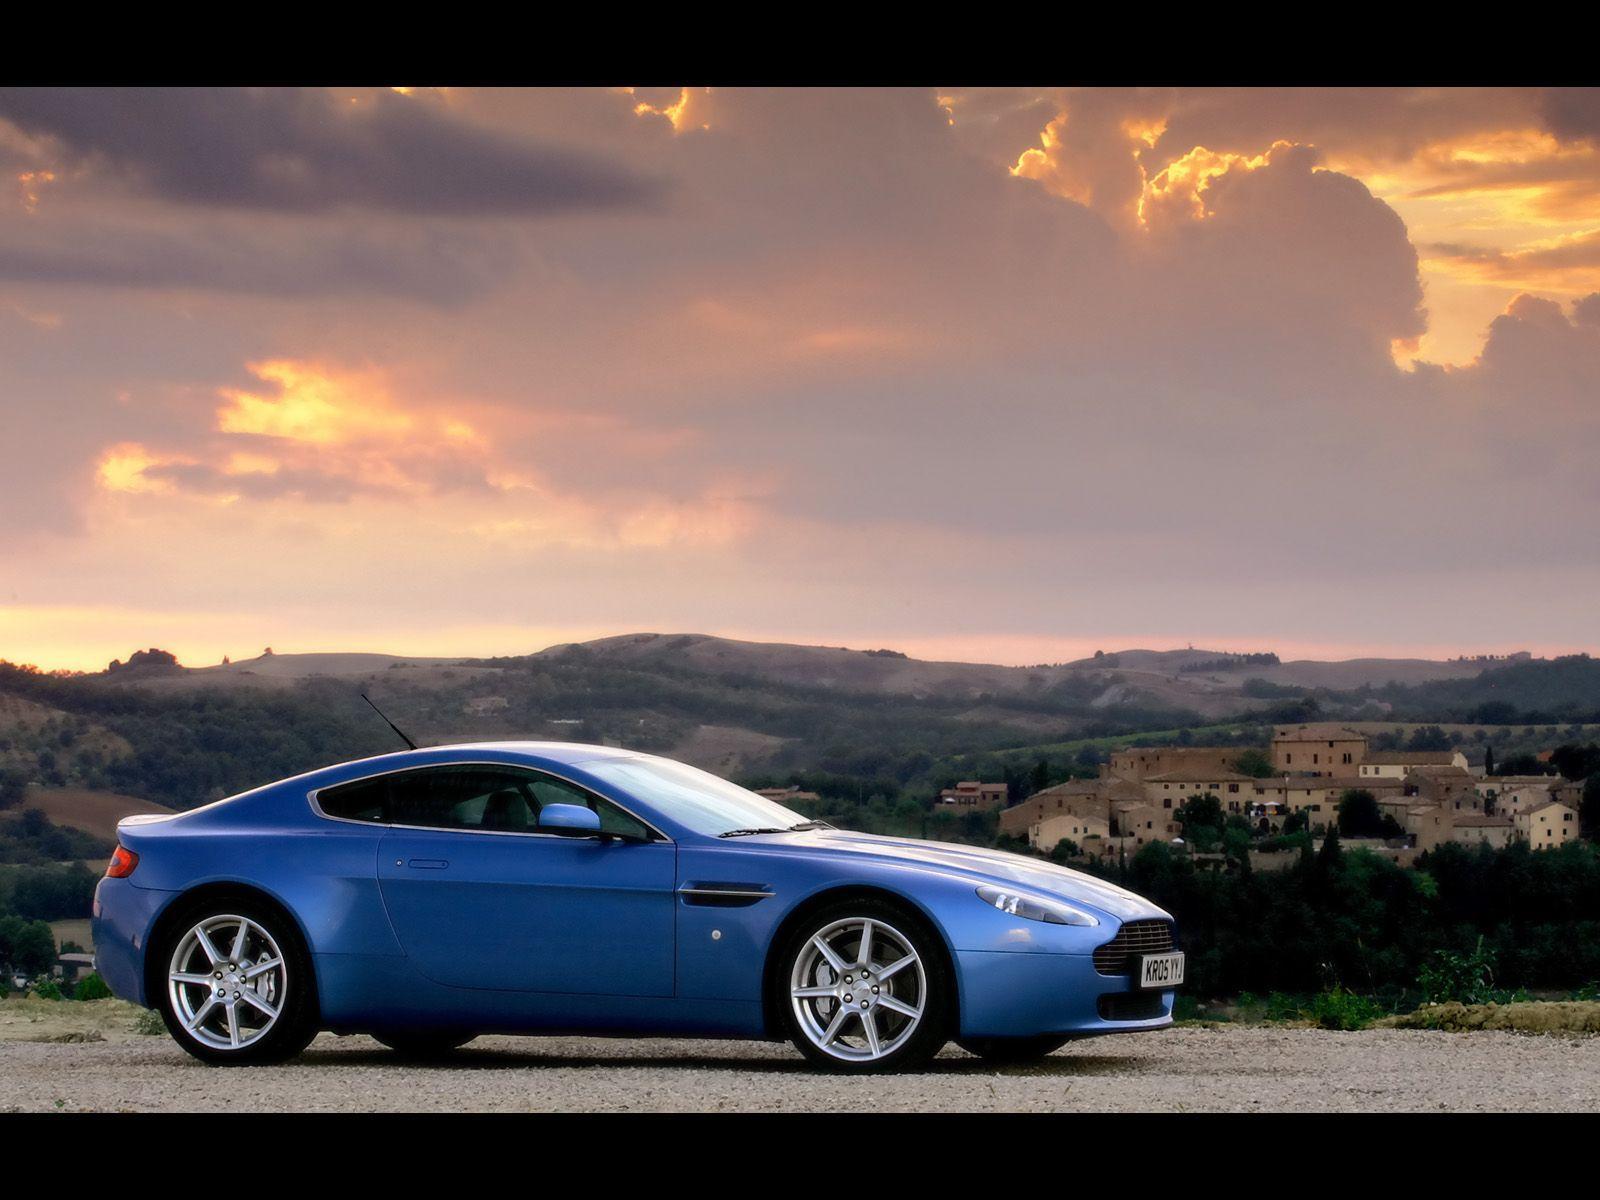 Aston Martin V8 Vantage Wallpaper 4k Download